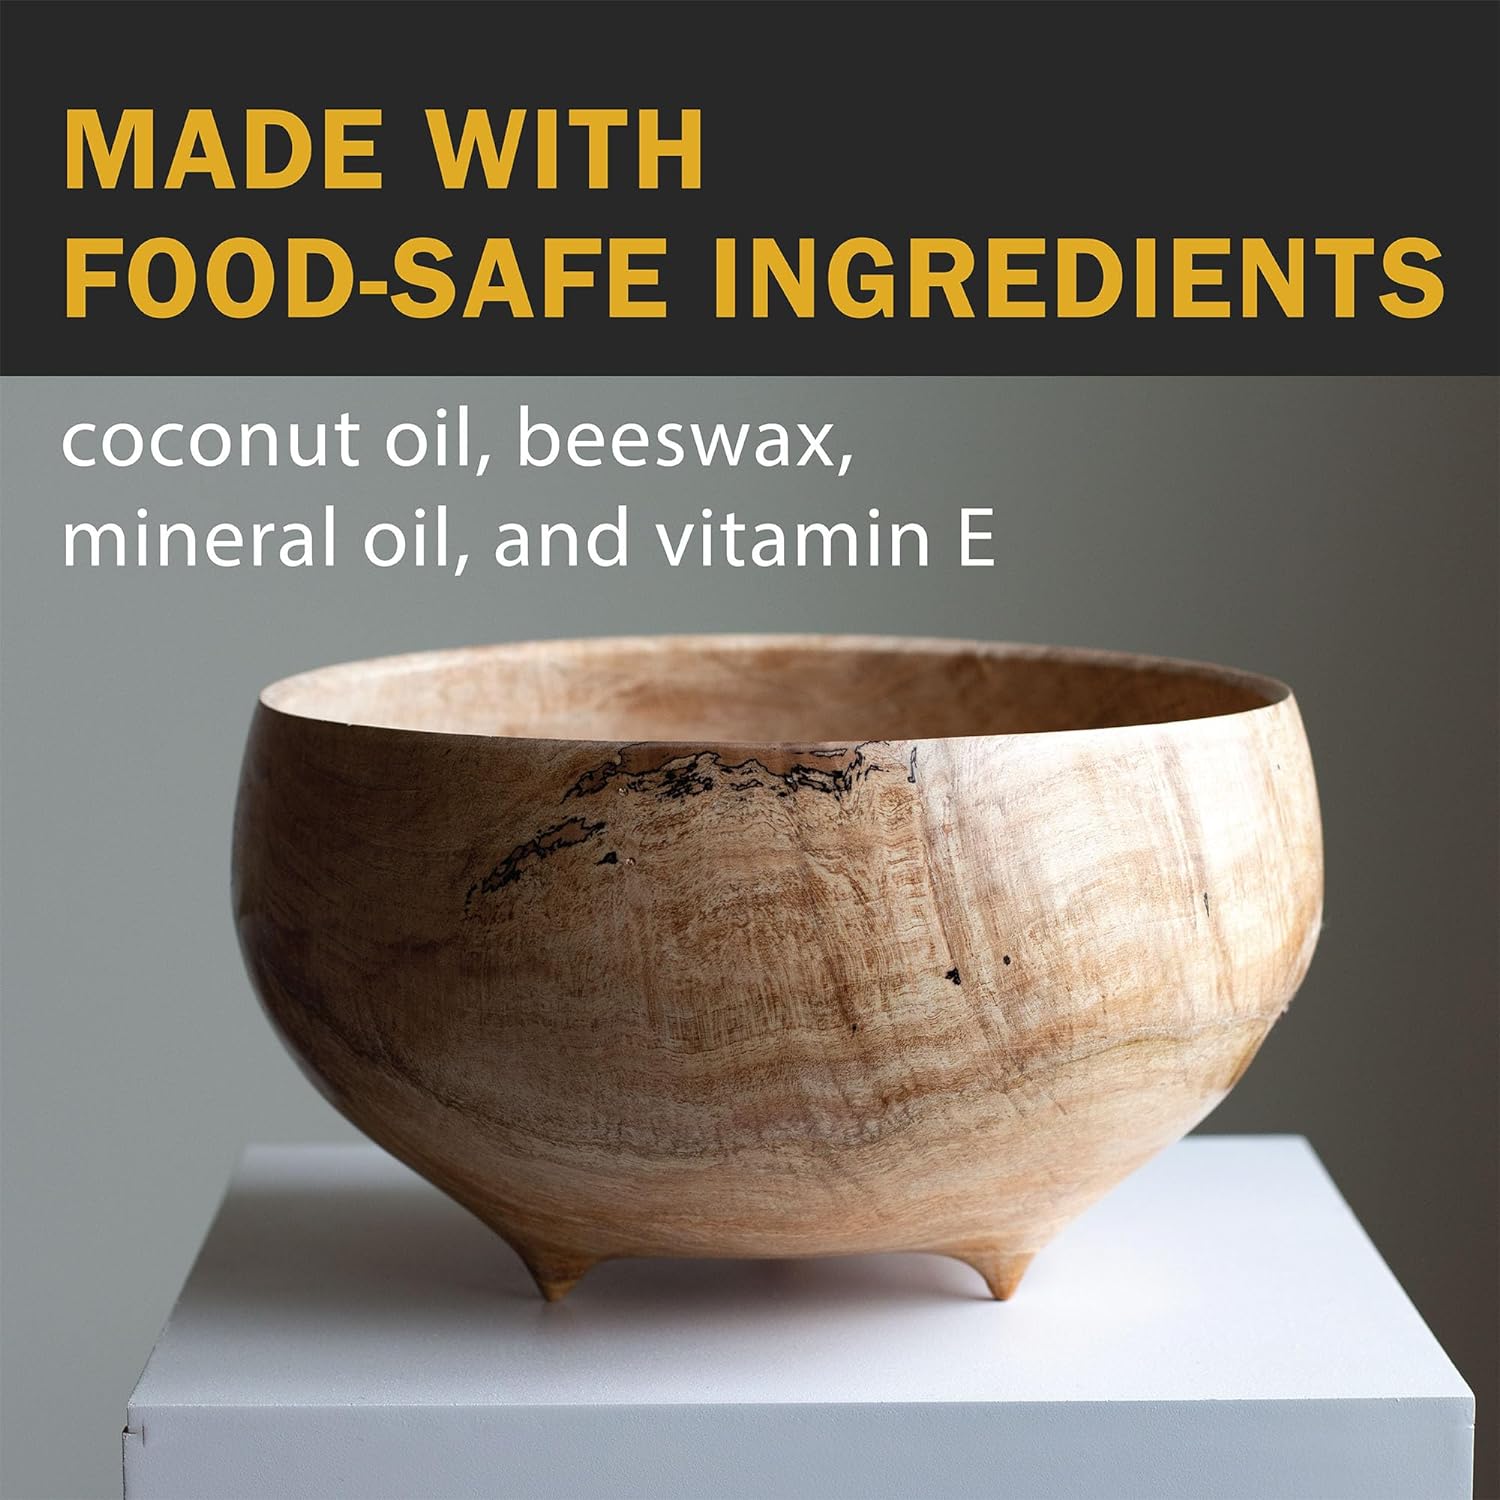 WALRUS OIL - Wood Wax, 3 oz Can, FDA Food-Safe, Cutting Board Wax and Board Cream : Health & Household